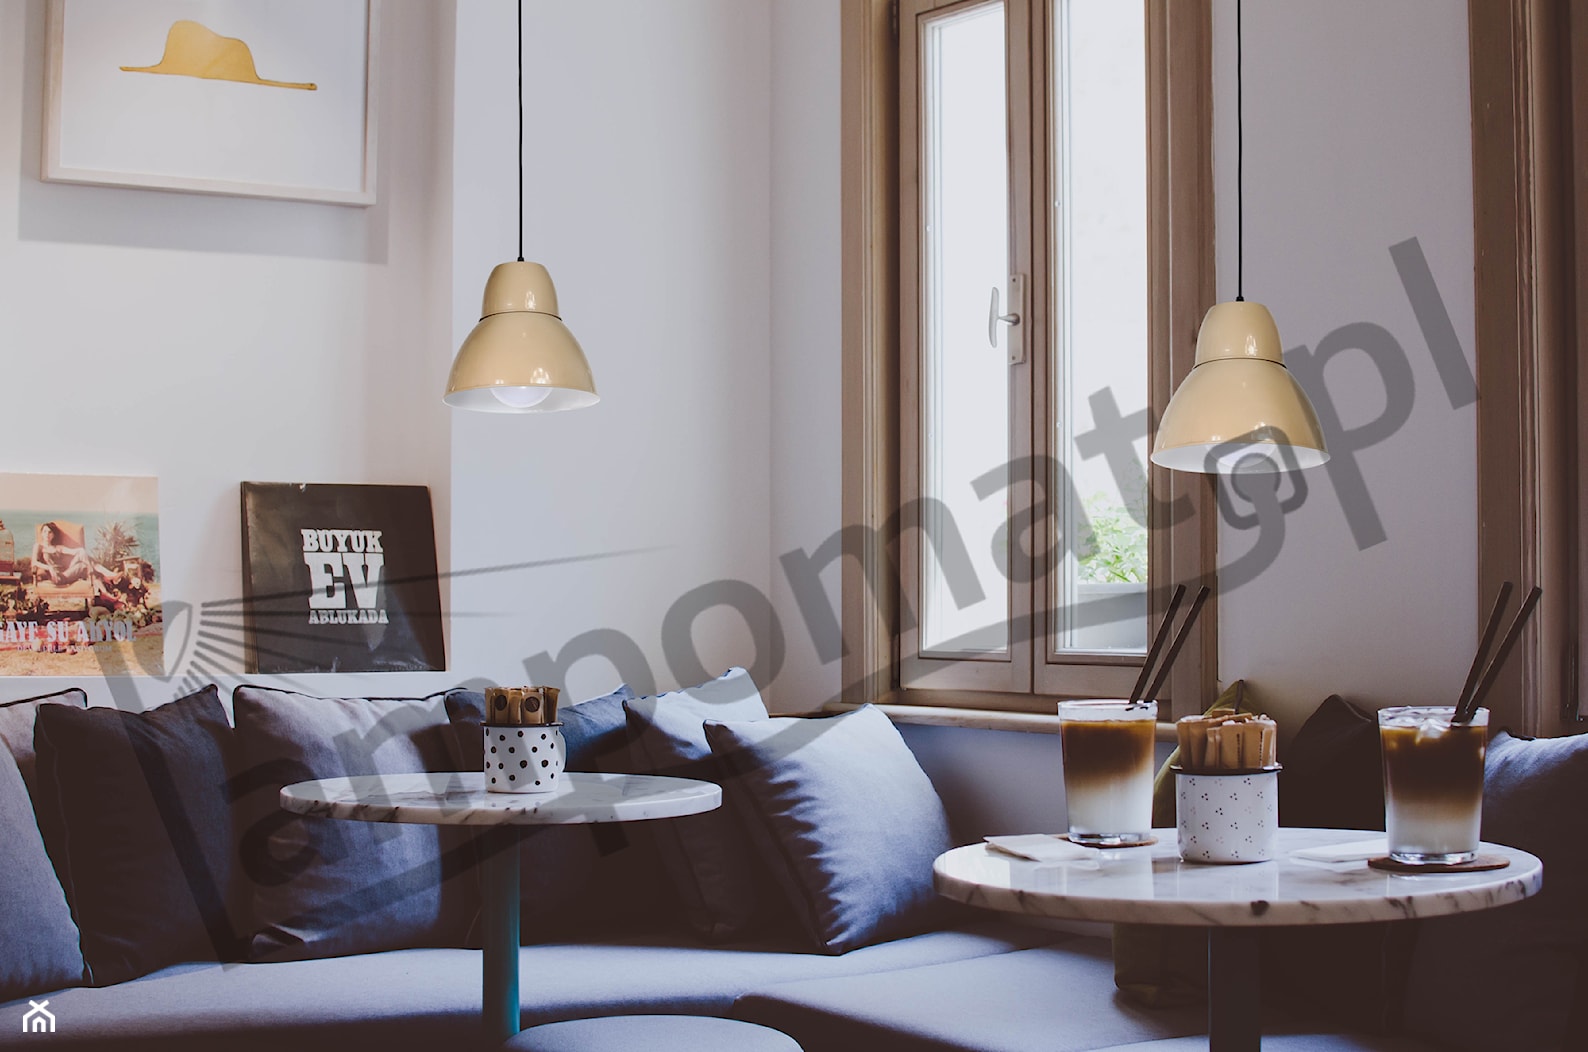 Jadalnia w stylu minimalistycznym z lampami Aldex - zdjęcie od Lampomat - Homebook